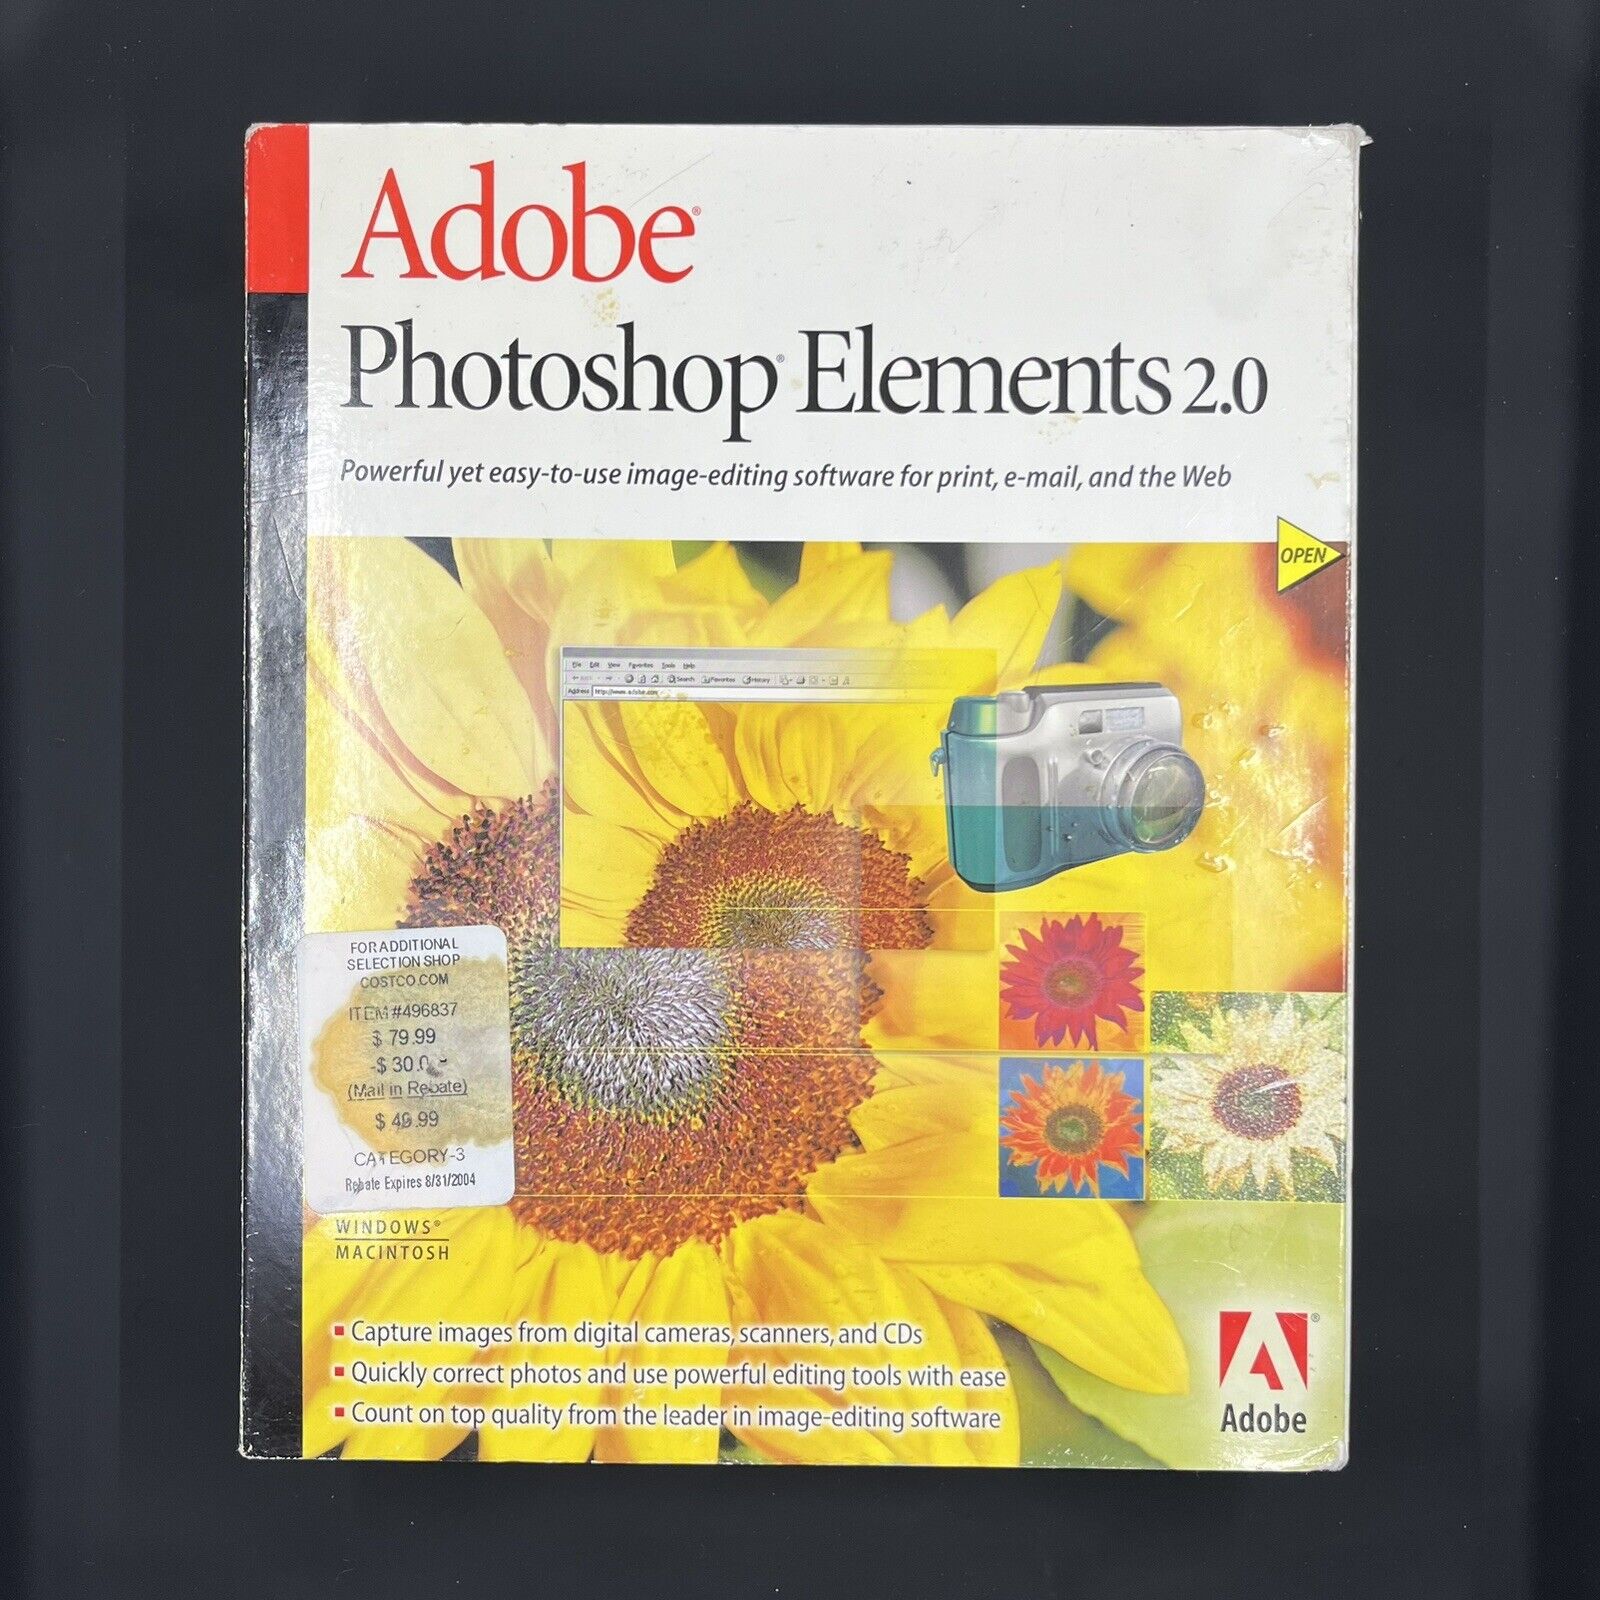 Adobe Photoshop Elements 2.0 Read Description For Details